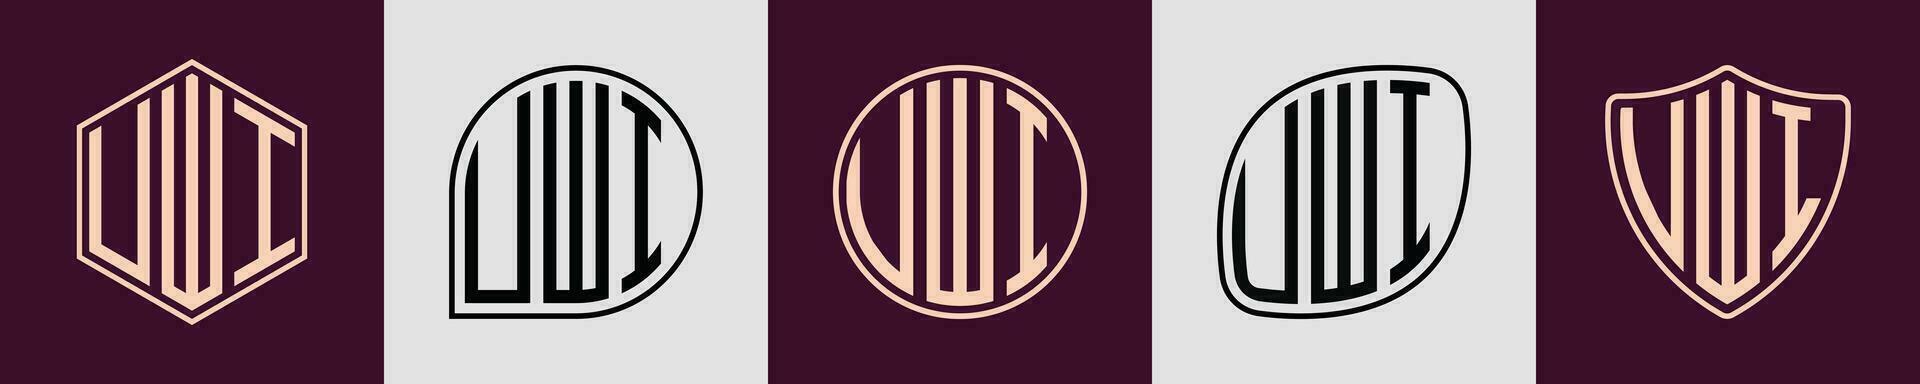 creativo sencillo inicial monograma uwi logo diseños vector